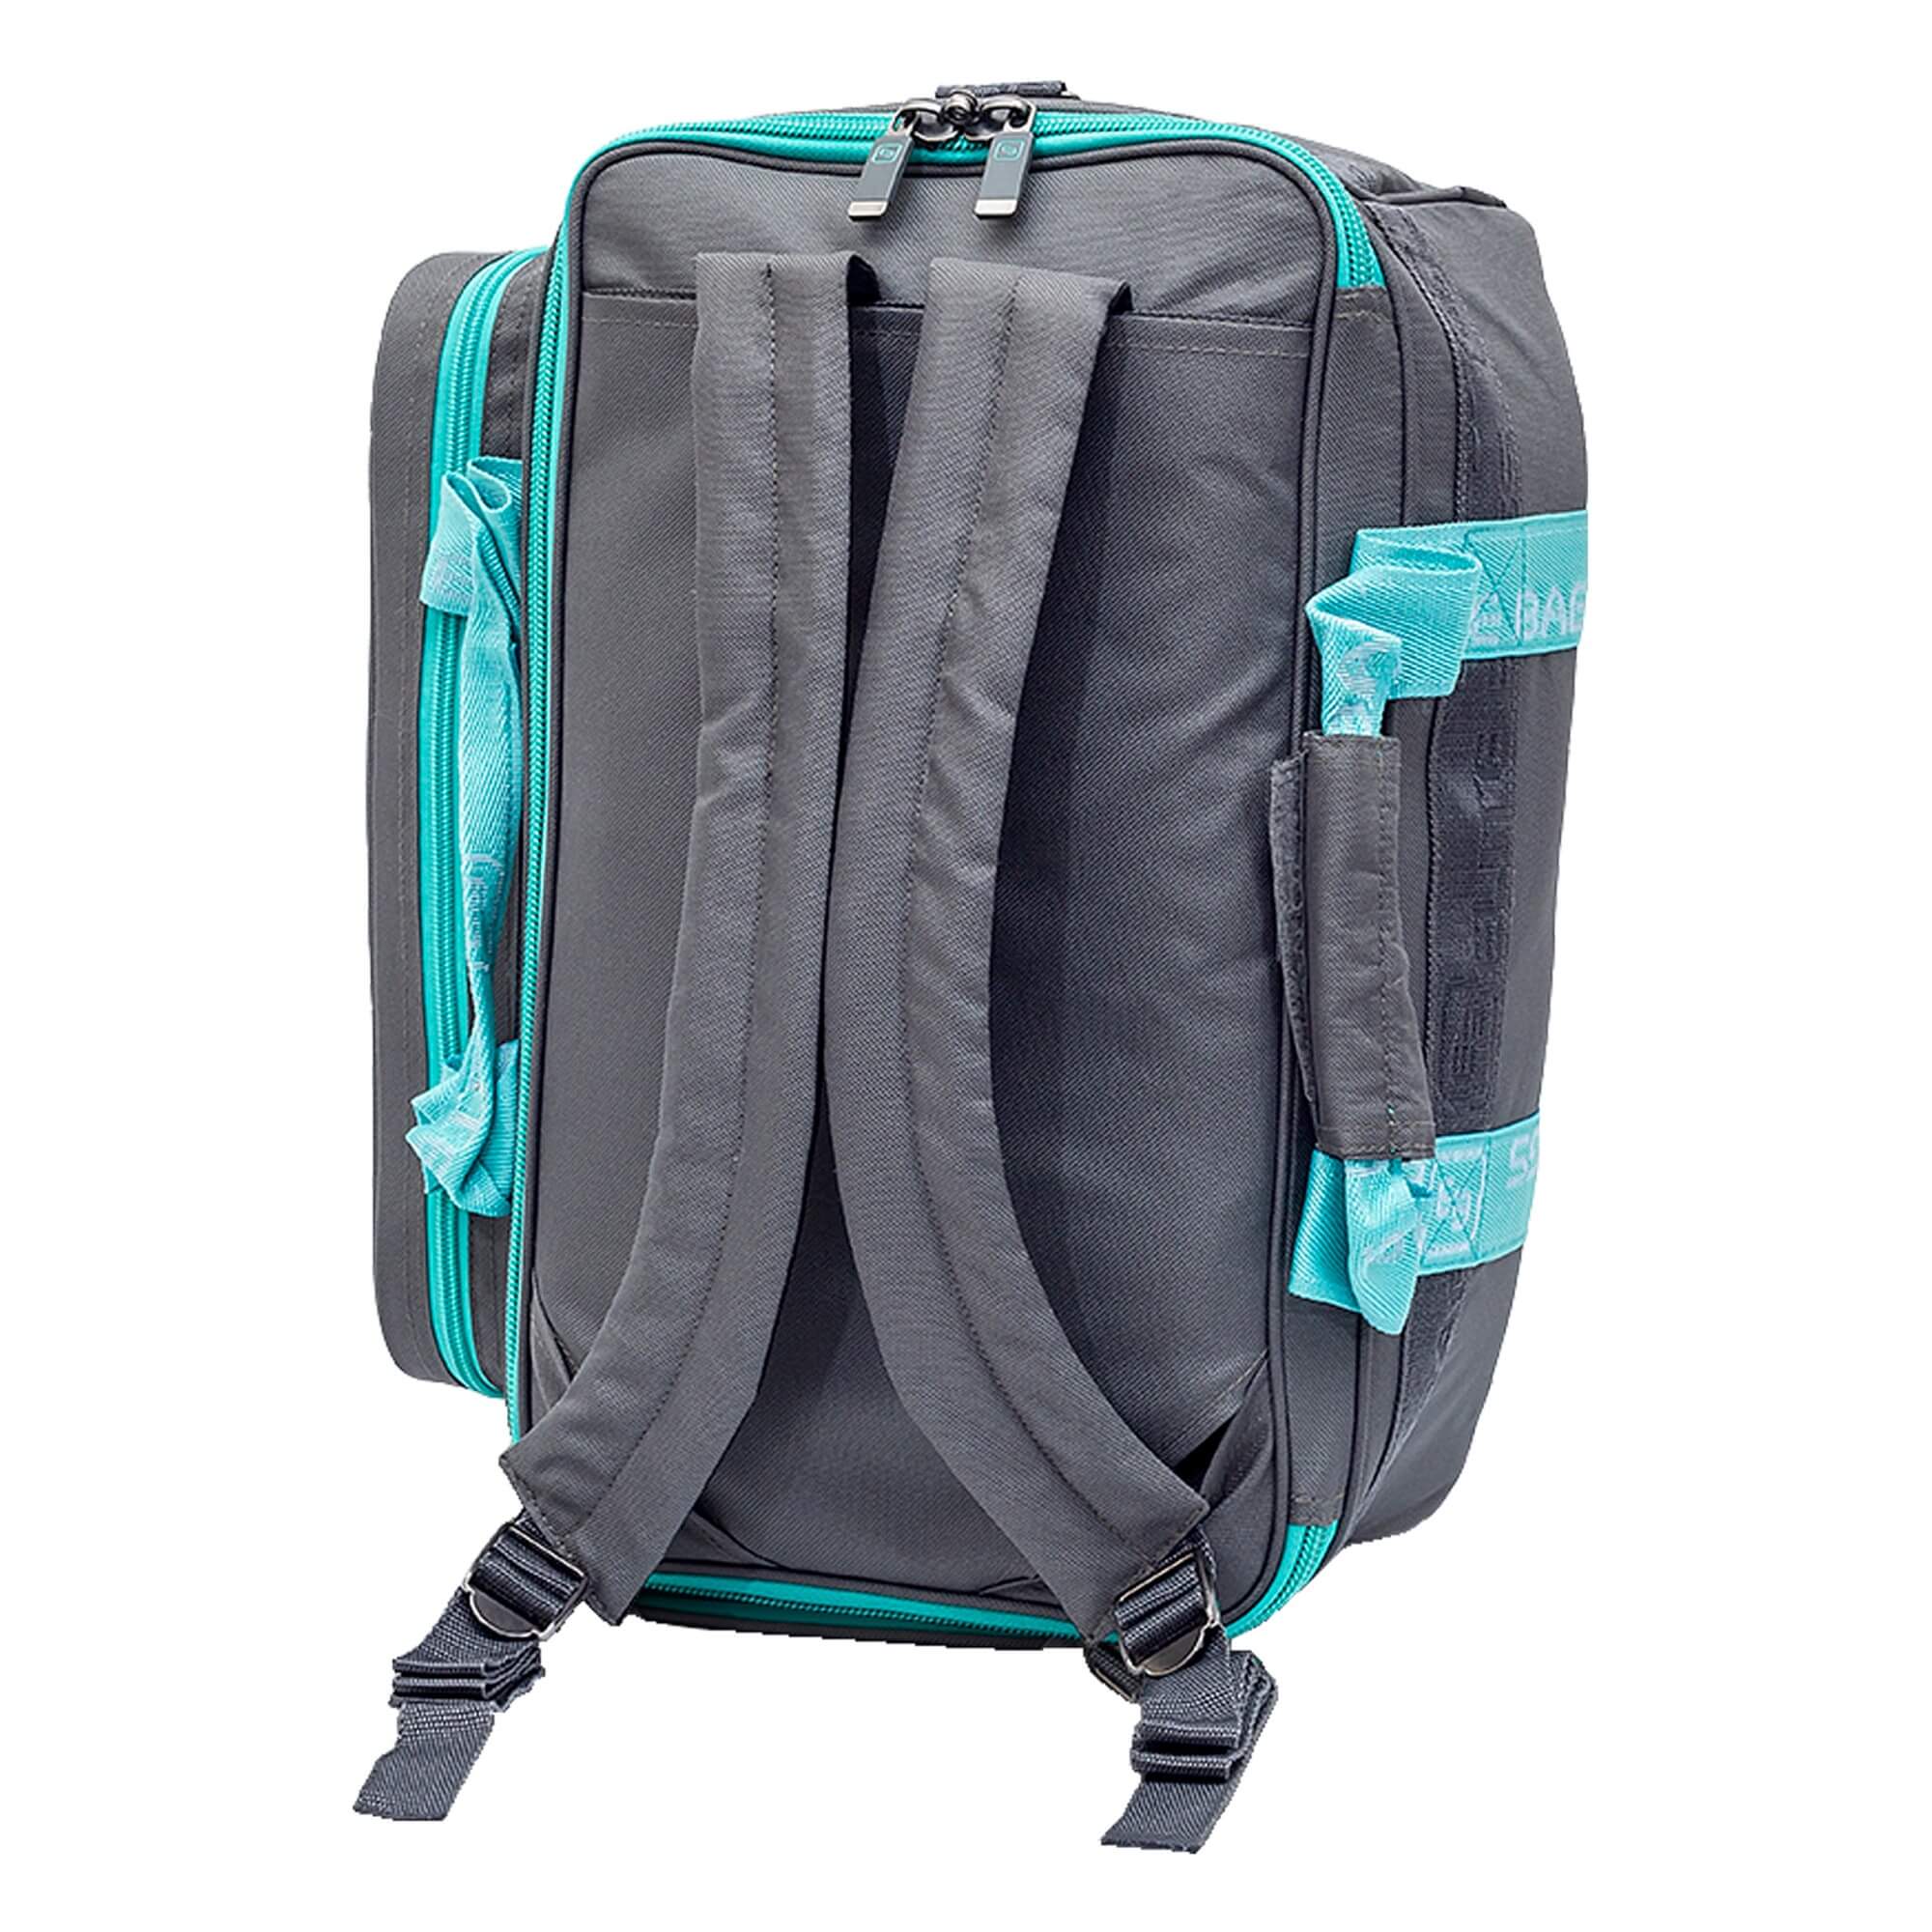 Elite Bags GP´S Softbag-Arzttasche in 2 Farben 40 x 21 x 25 cm. Sehr leichte Softbag-Arzttasche mit flexibel einteilbaren Innenraum. Äußerst funktionell. Kann als Tasche, Rucksack oder über der Schulter getragen werden. Gewicht 1,2 kg.